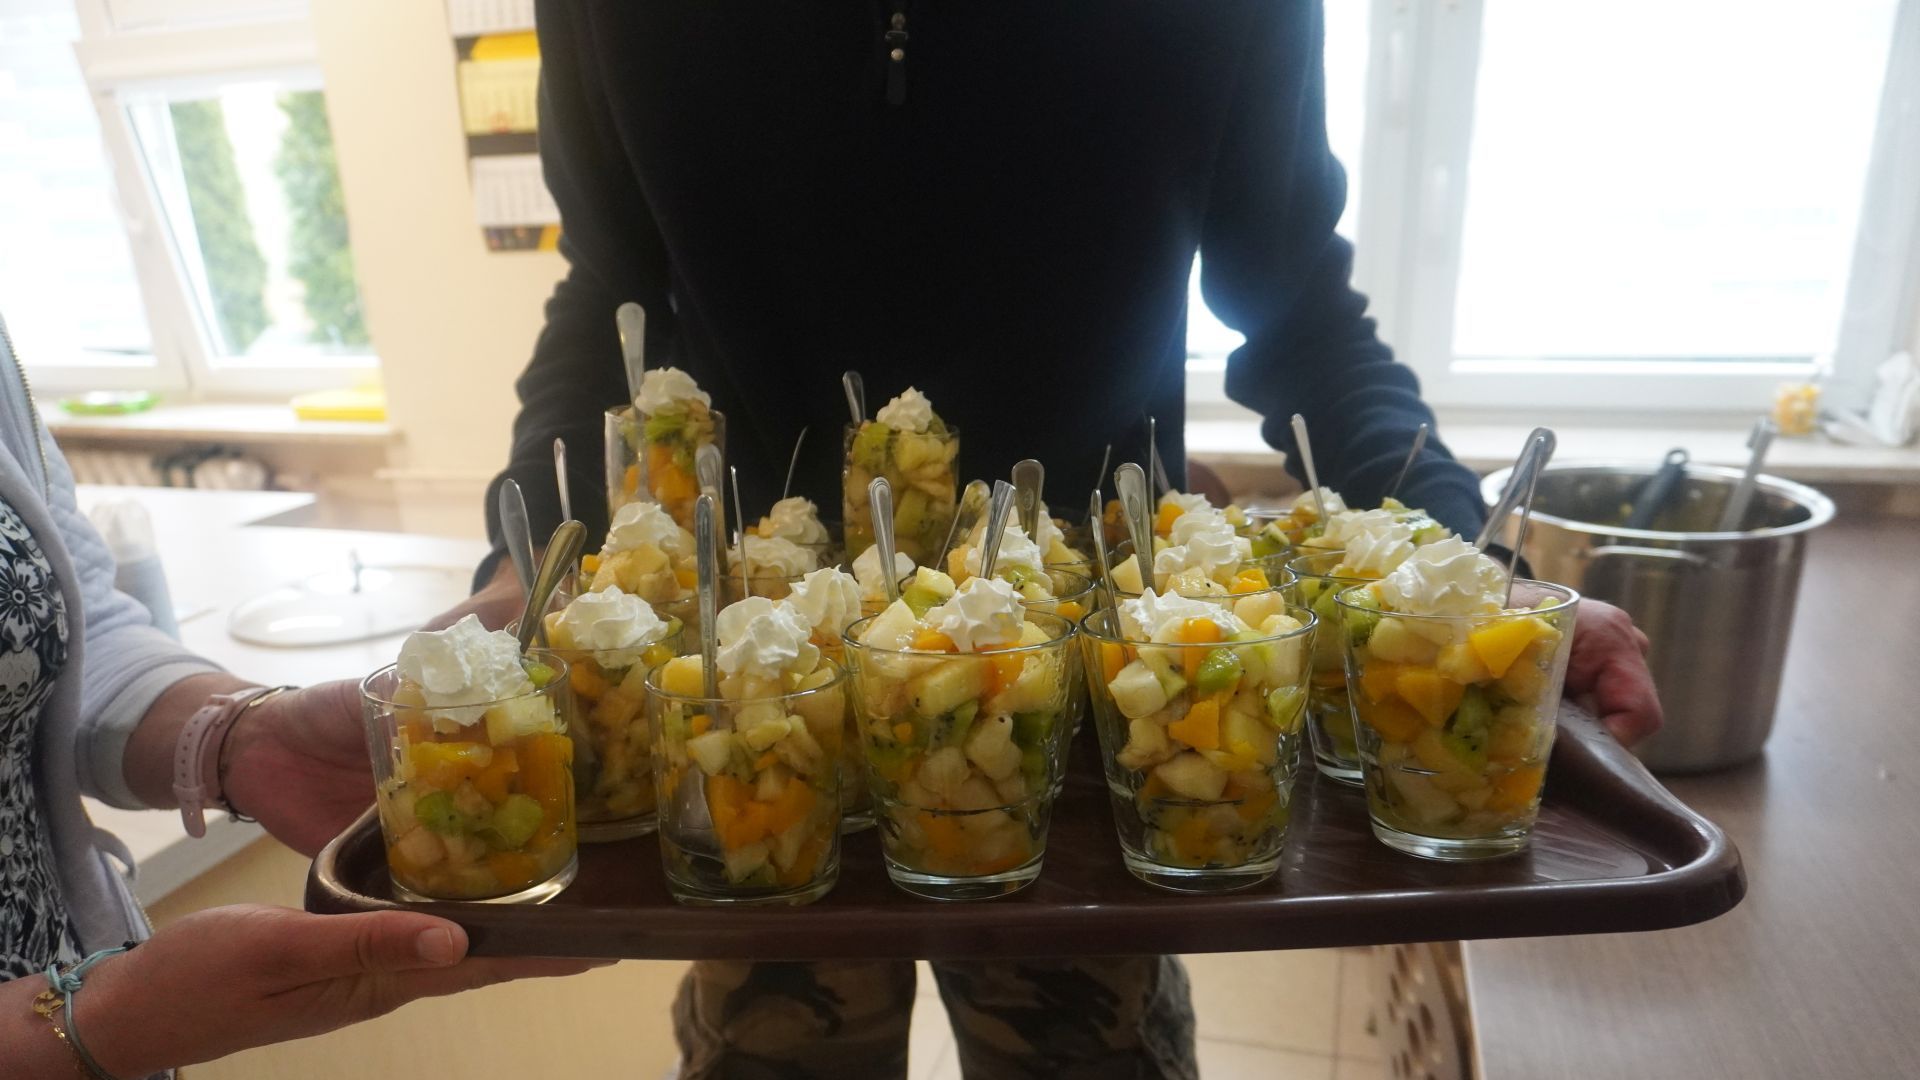 Taca z deserami owocowymi przygotowanymi w pracowni kulinarnej w ramach obchodów Międzynarodowego Dnia Ziemi. 